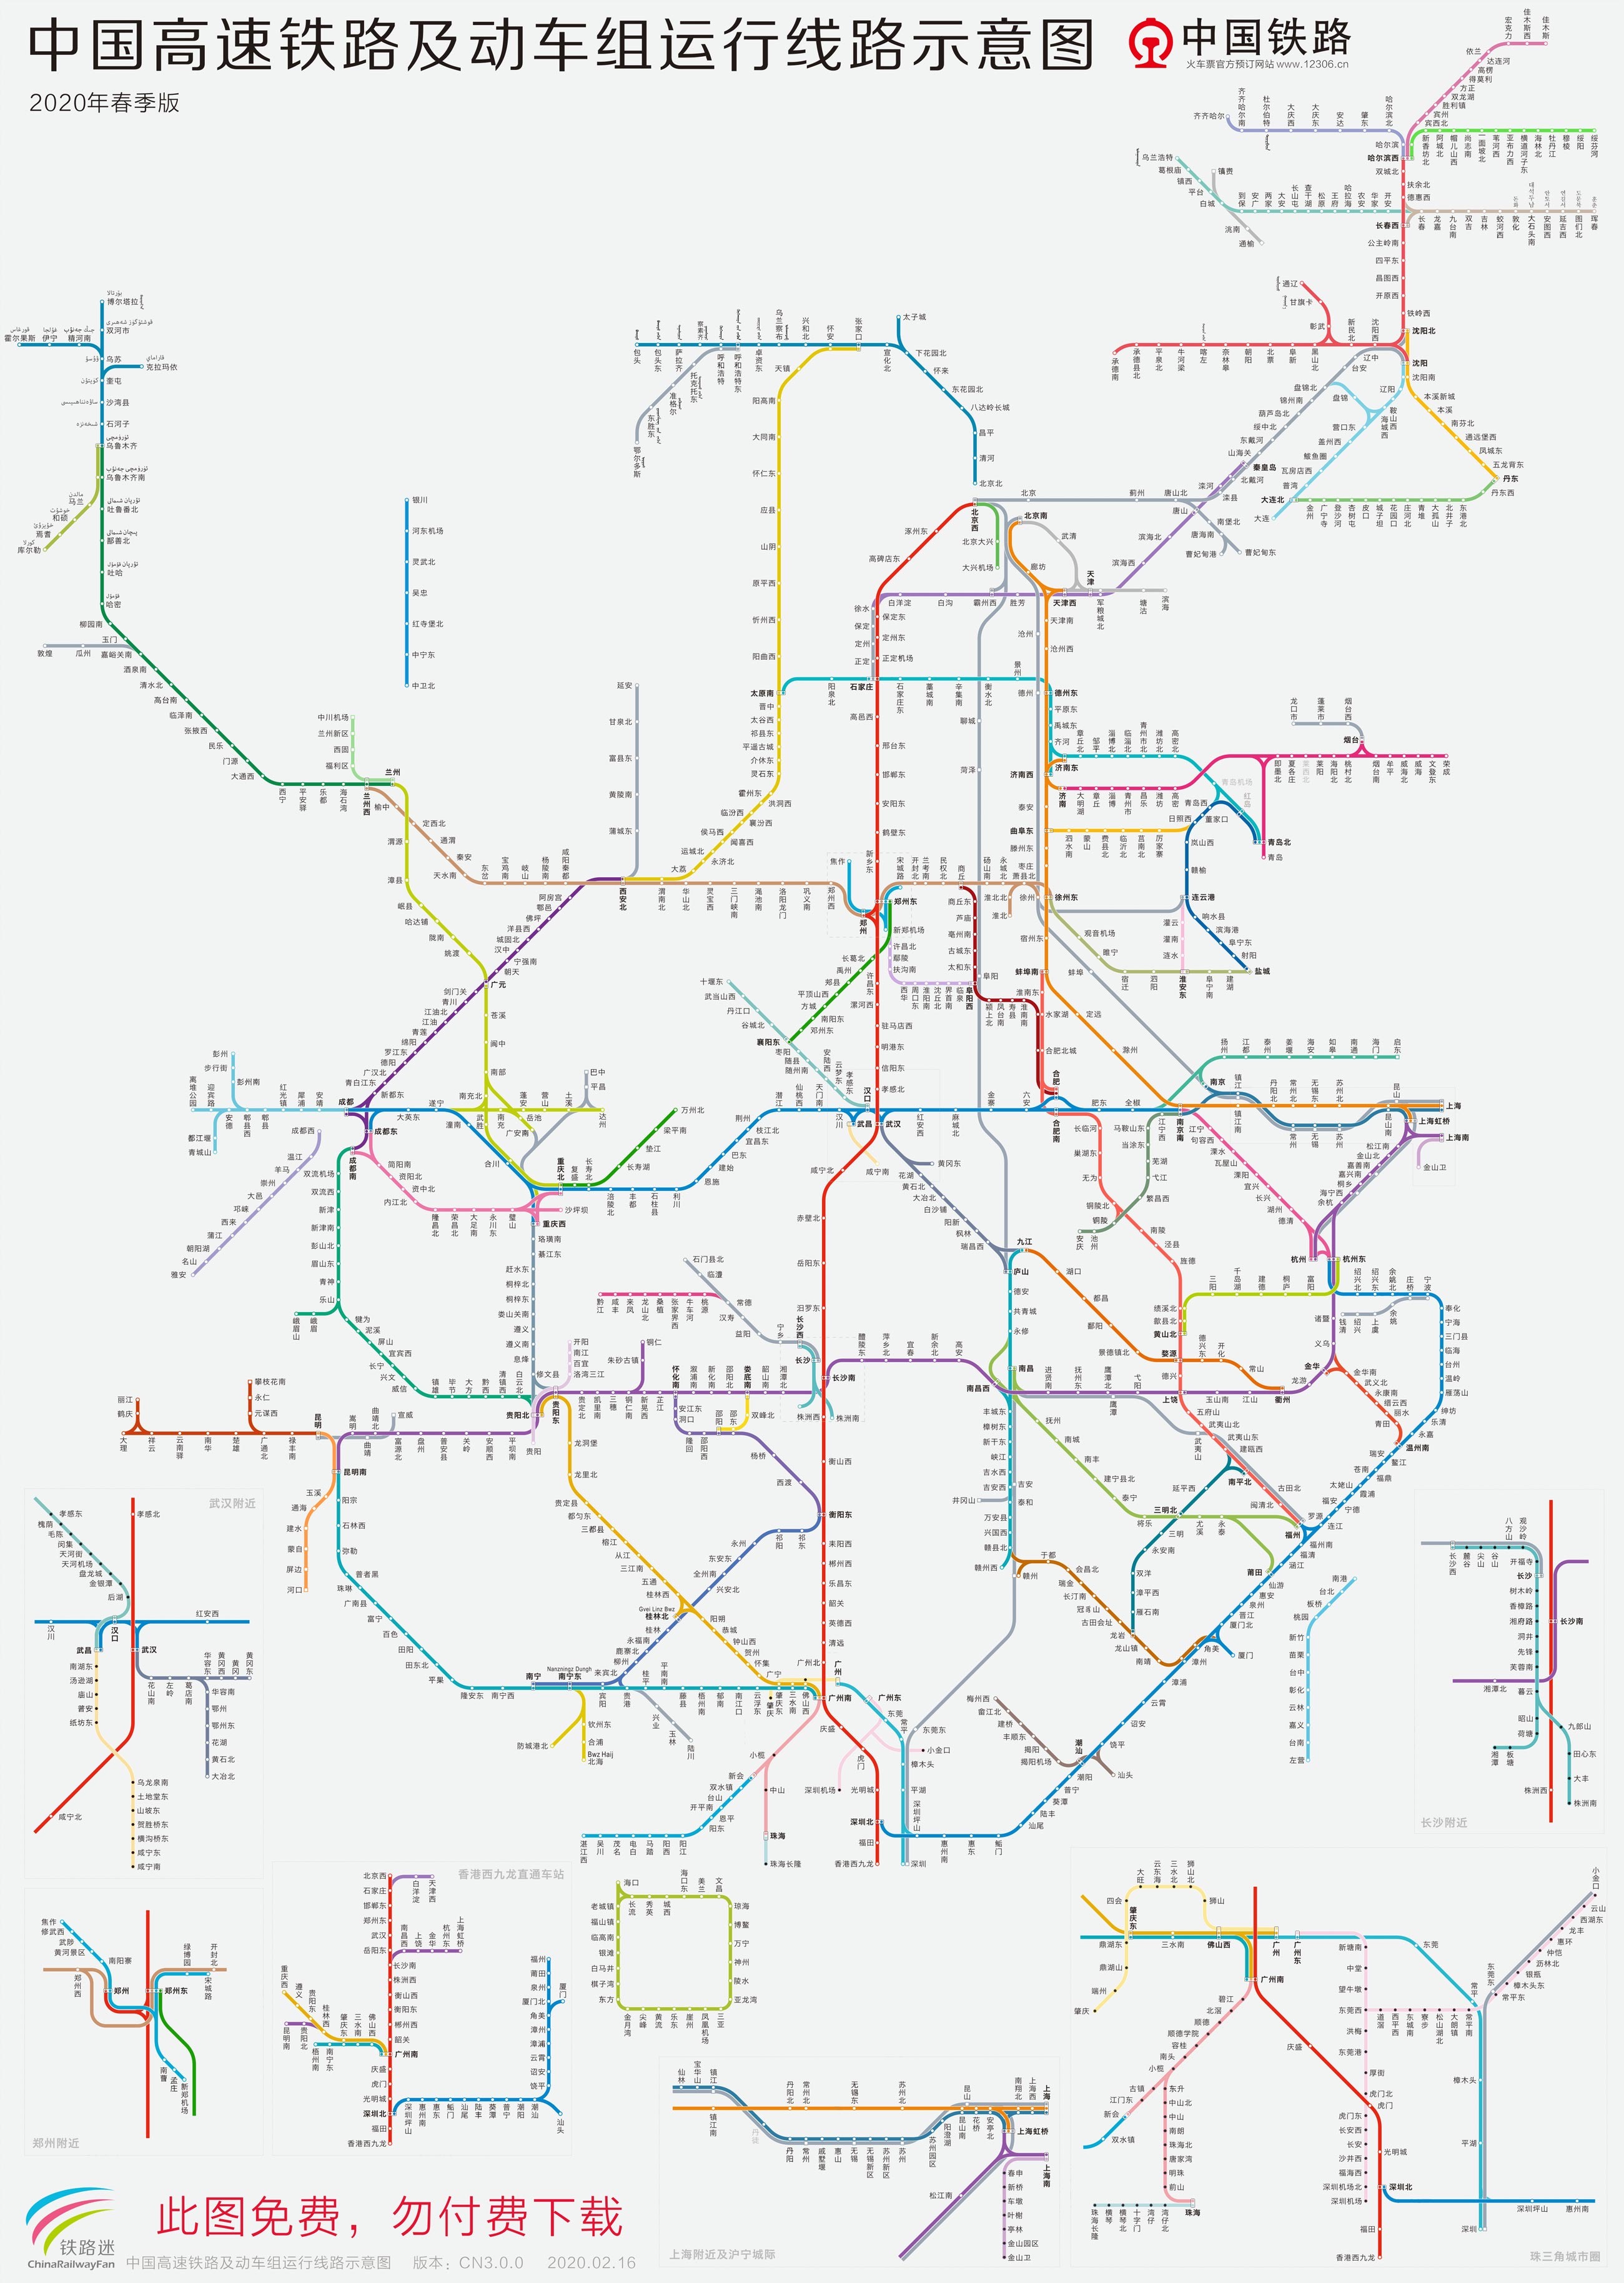 全国高铁线及动车组列车运行路线图 (2020春)